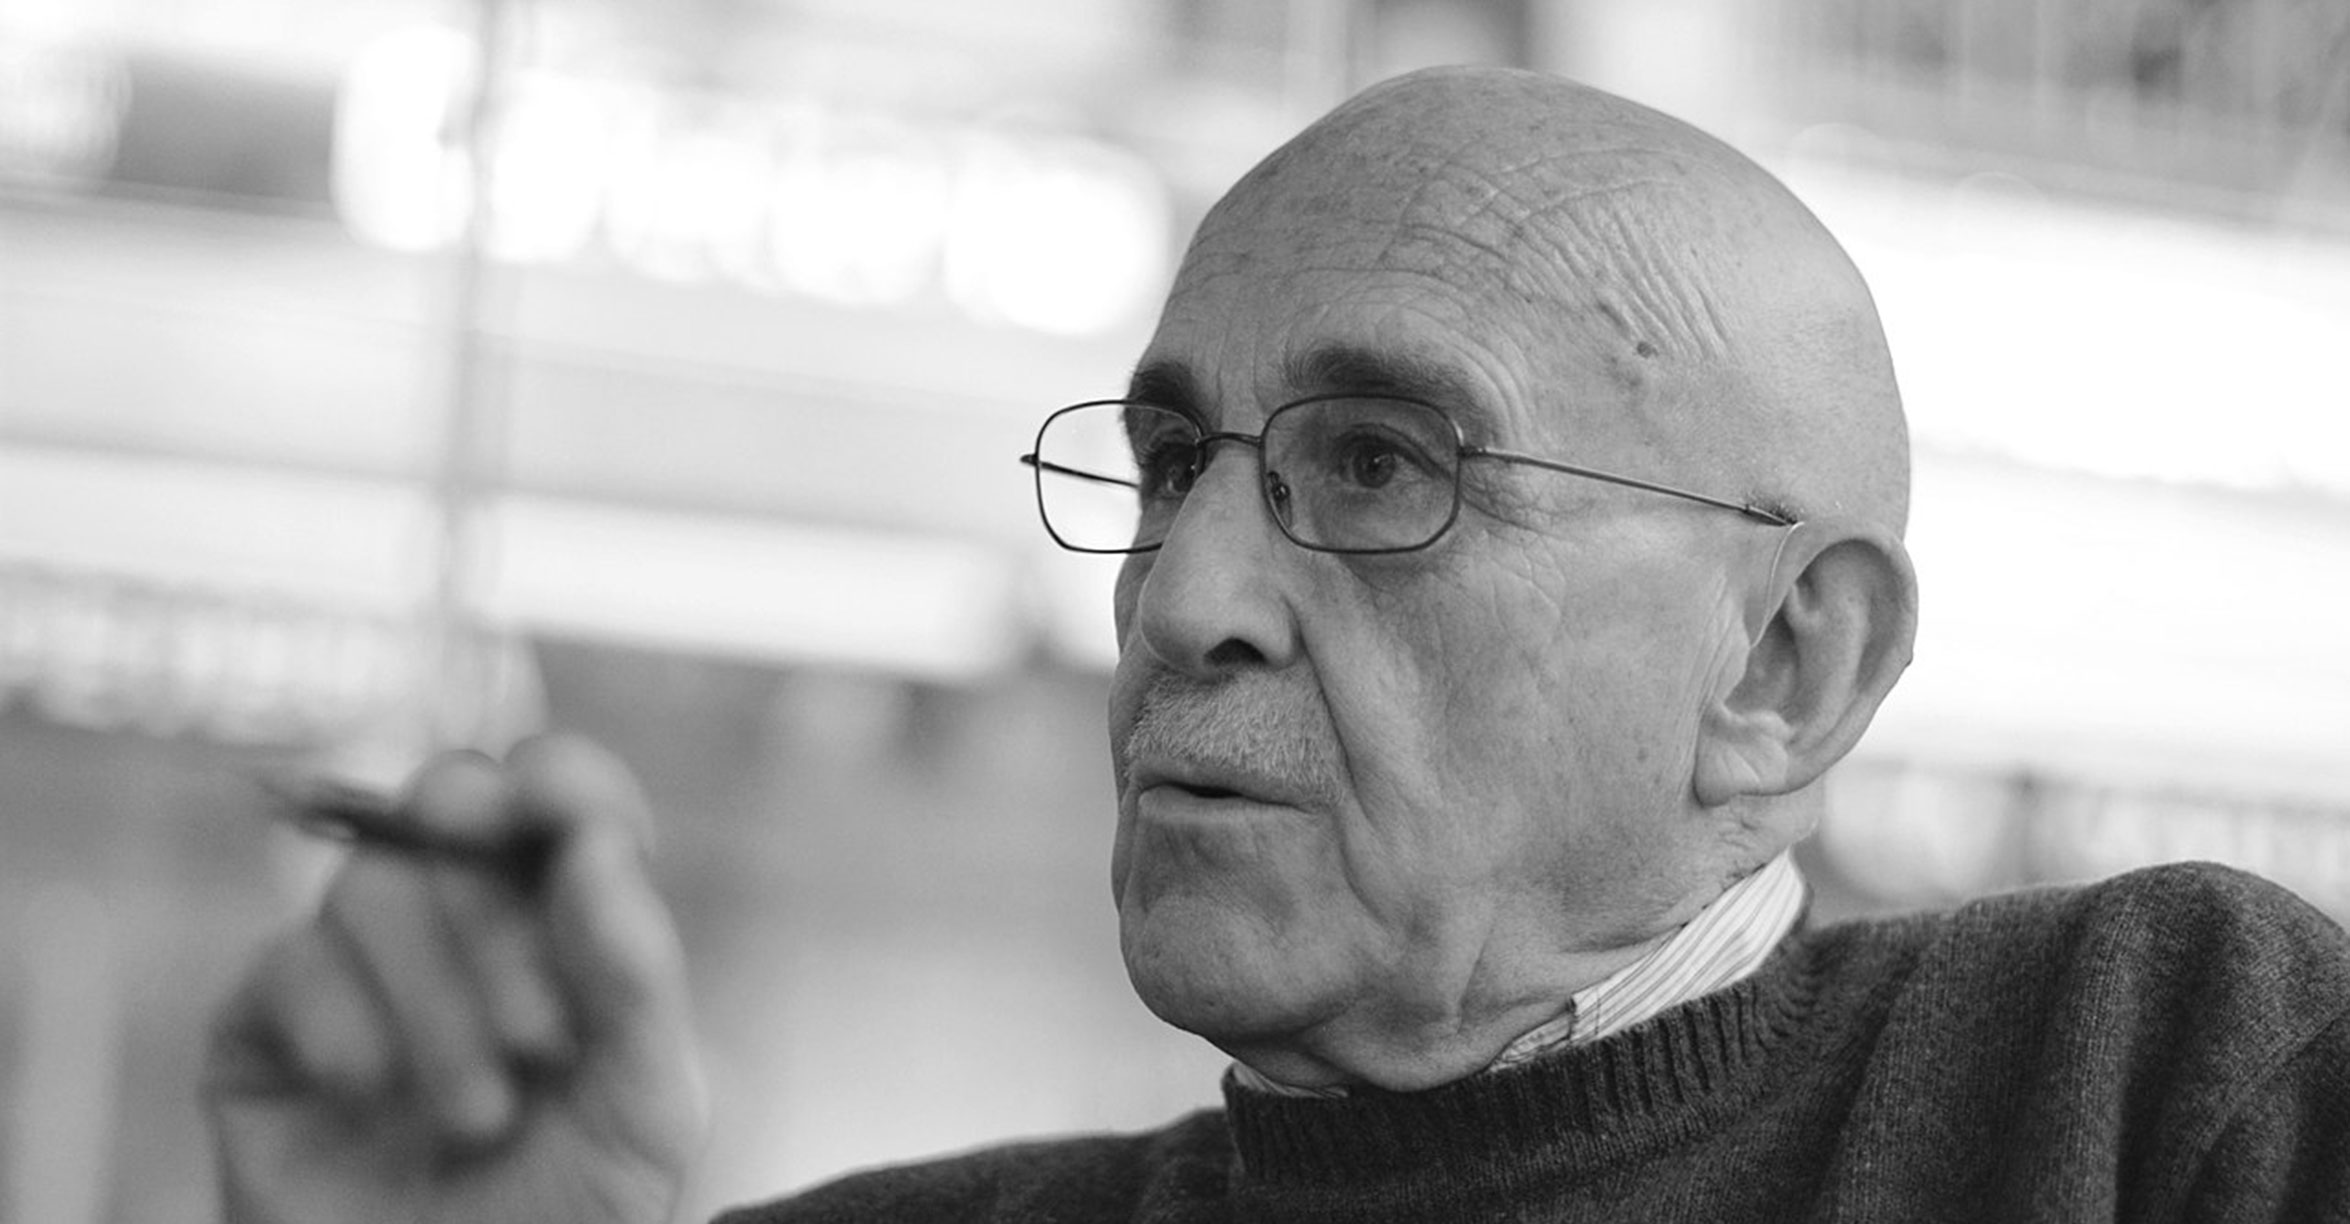 El Festival Internacional de las Artes Escénicas de Calzada de Calatrava rinde homenaje al dramaturgo valenciano José Sanchis Sinisterra